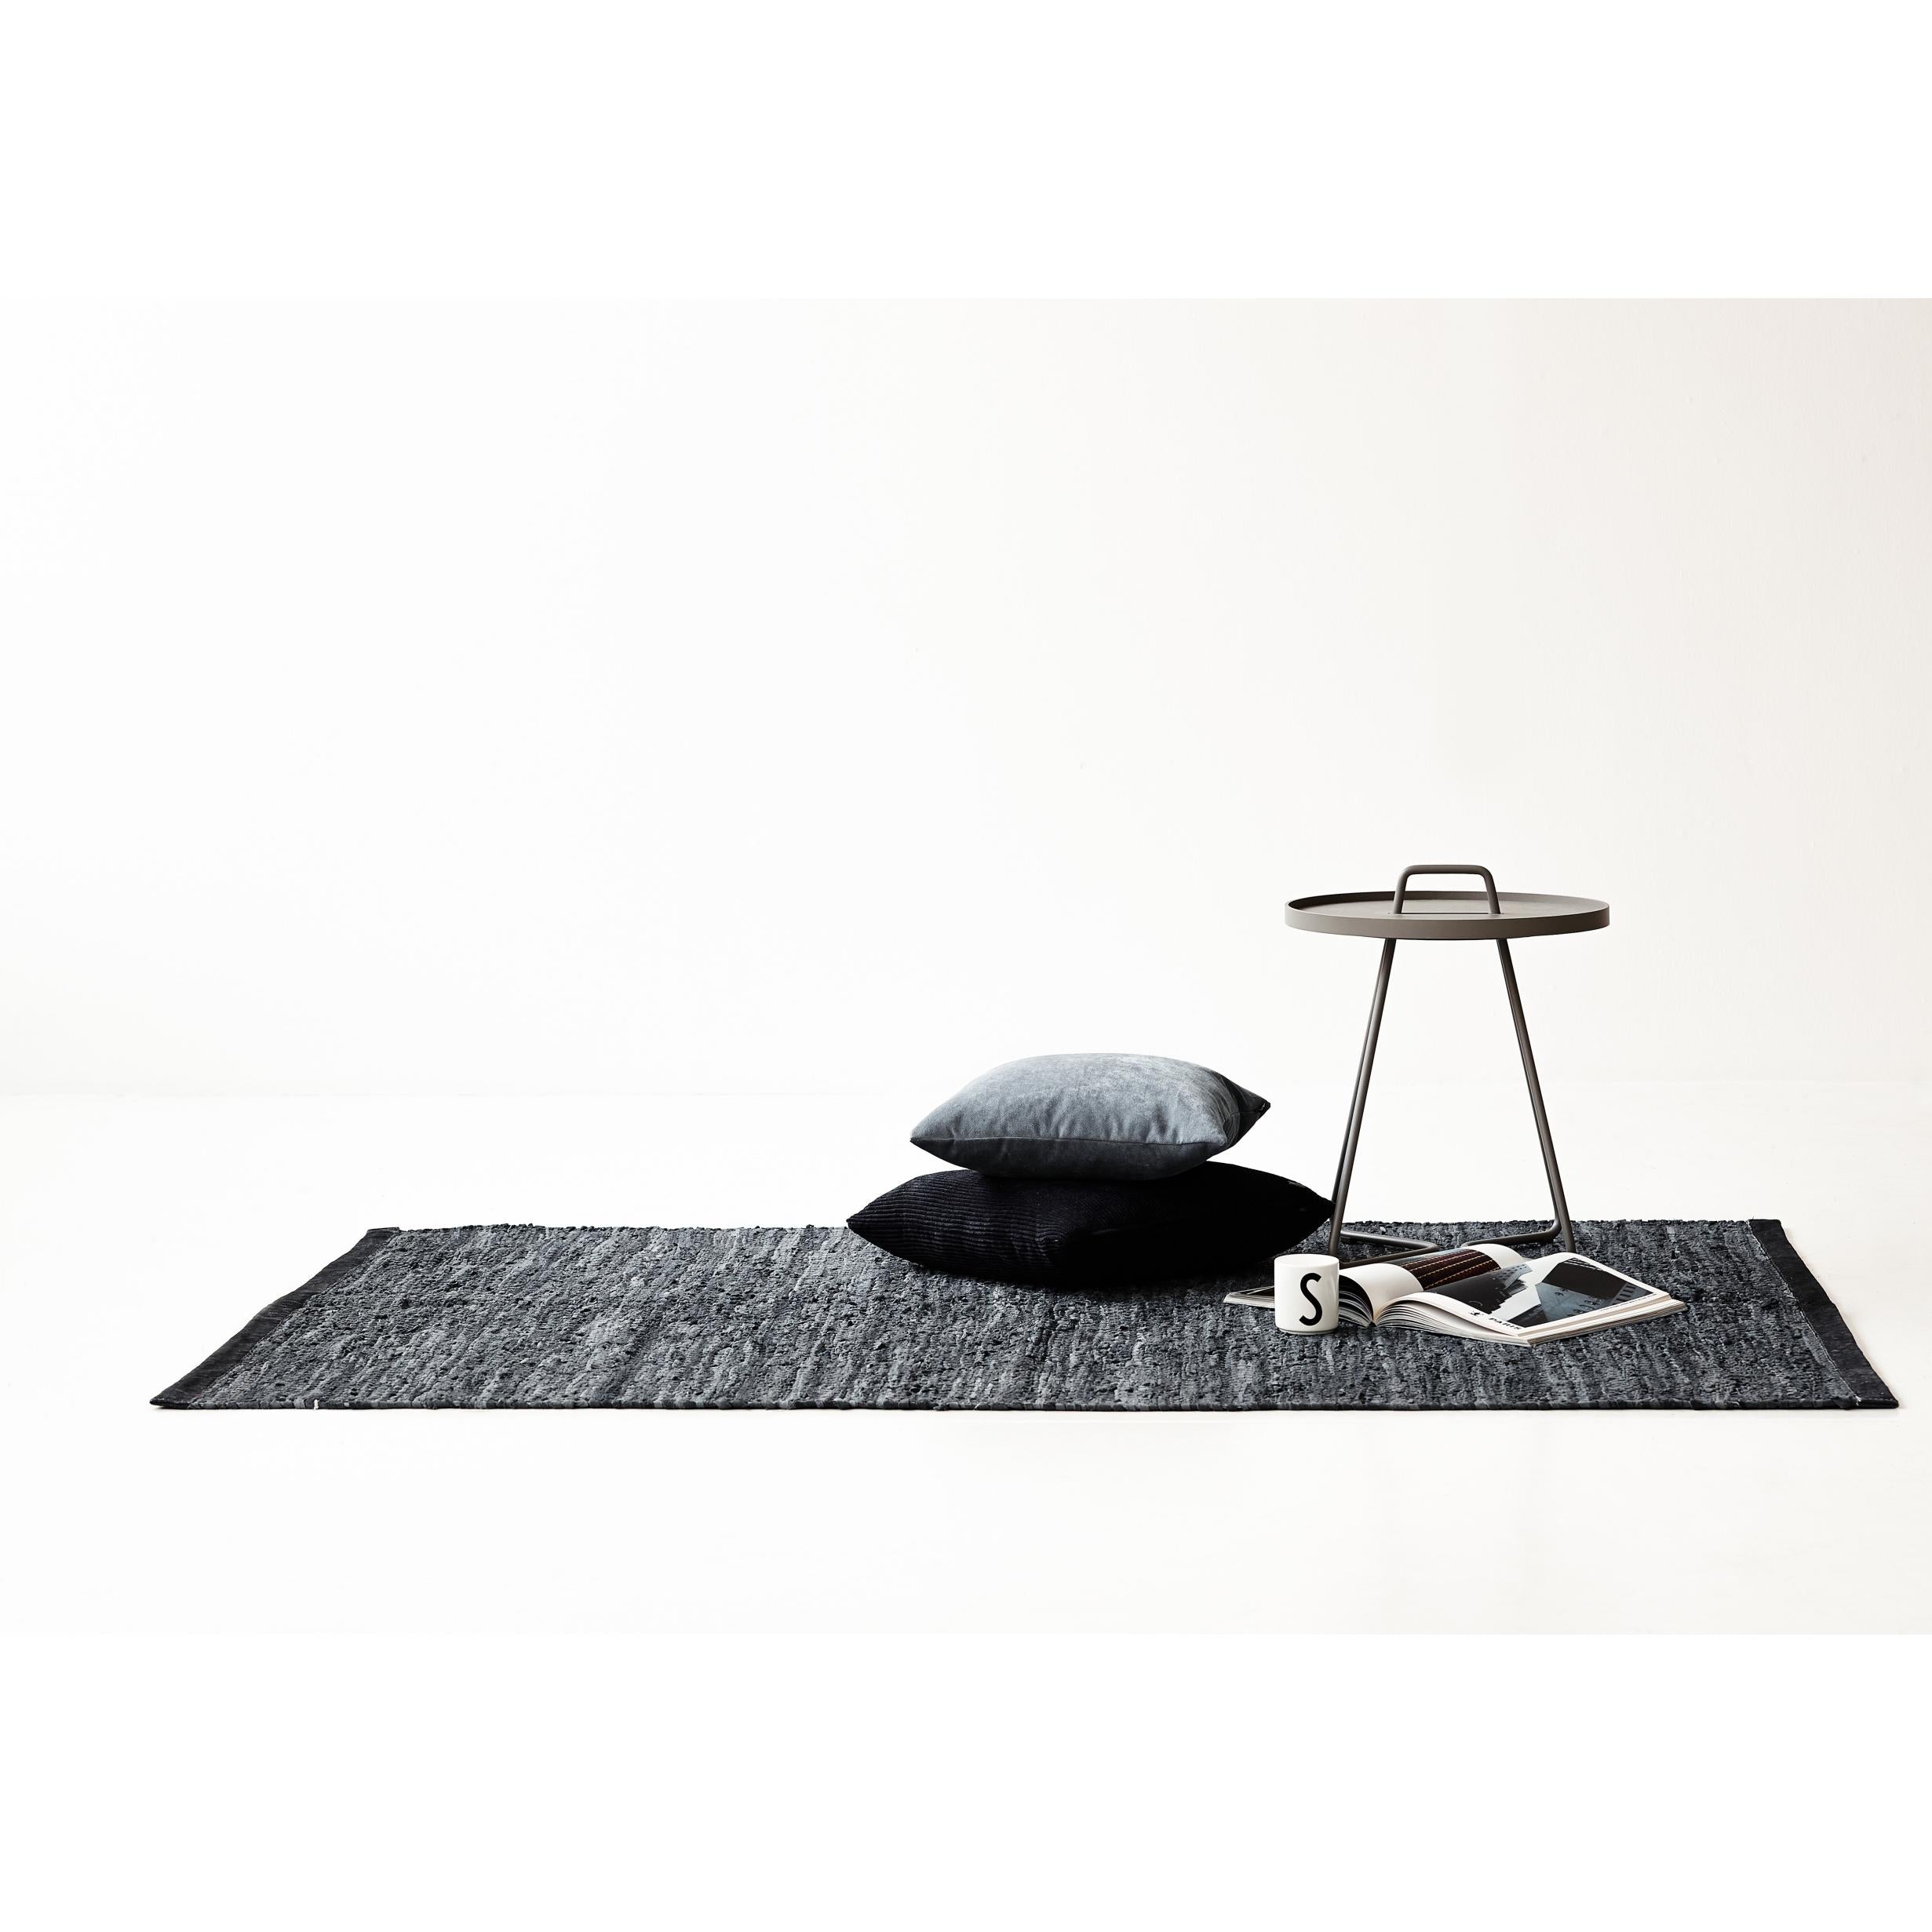 Koberec s pevný kožený koberec tmavě šedá, 65 x 135 cm